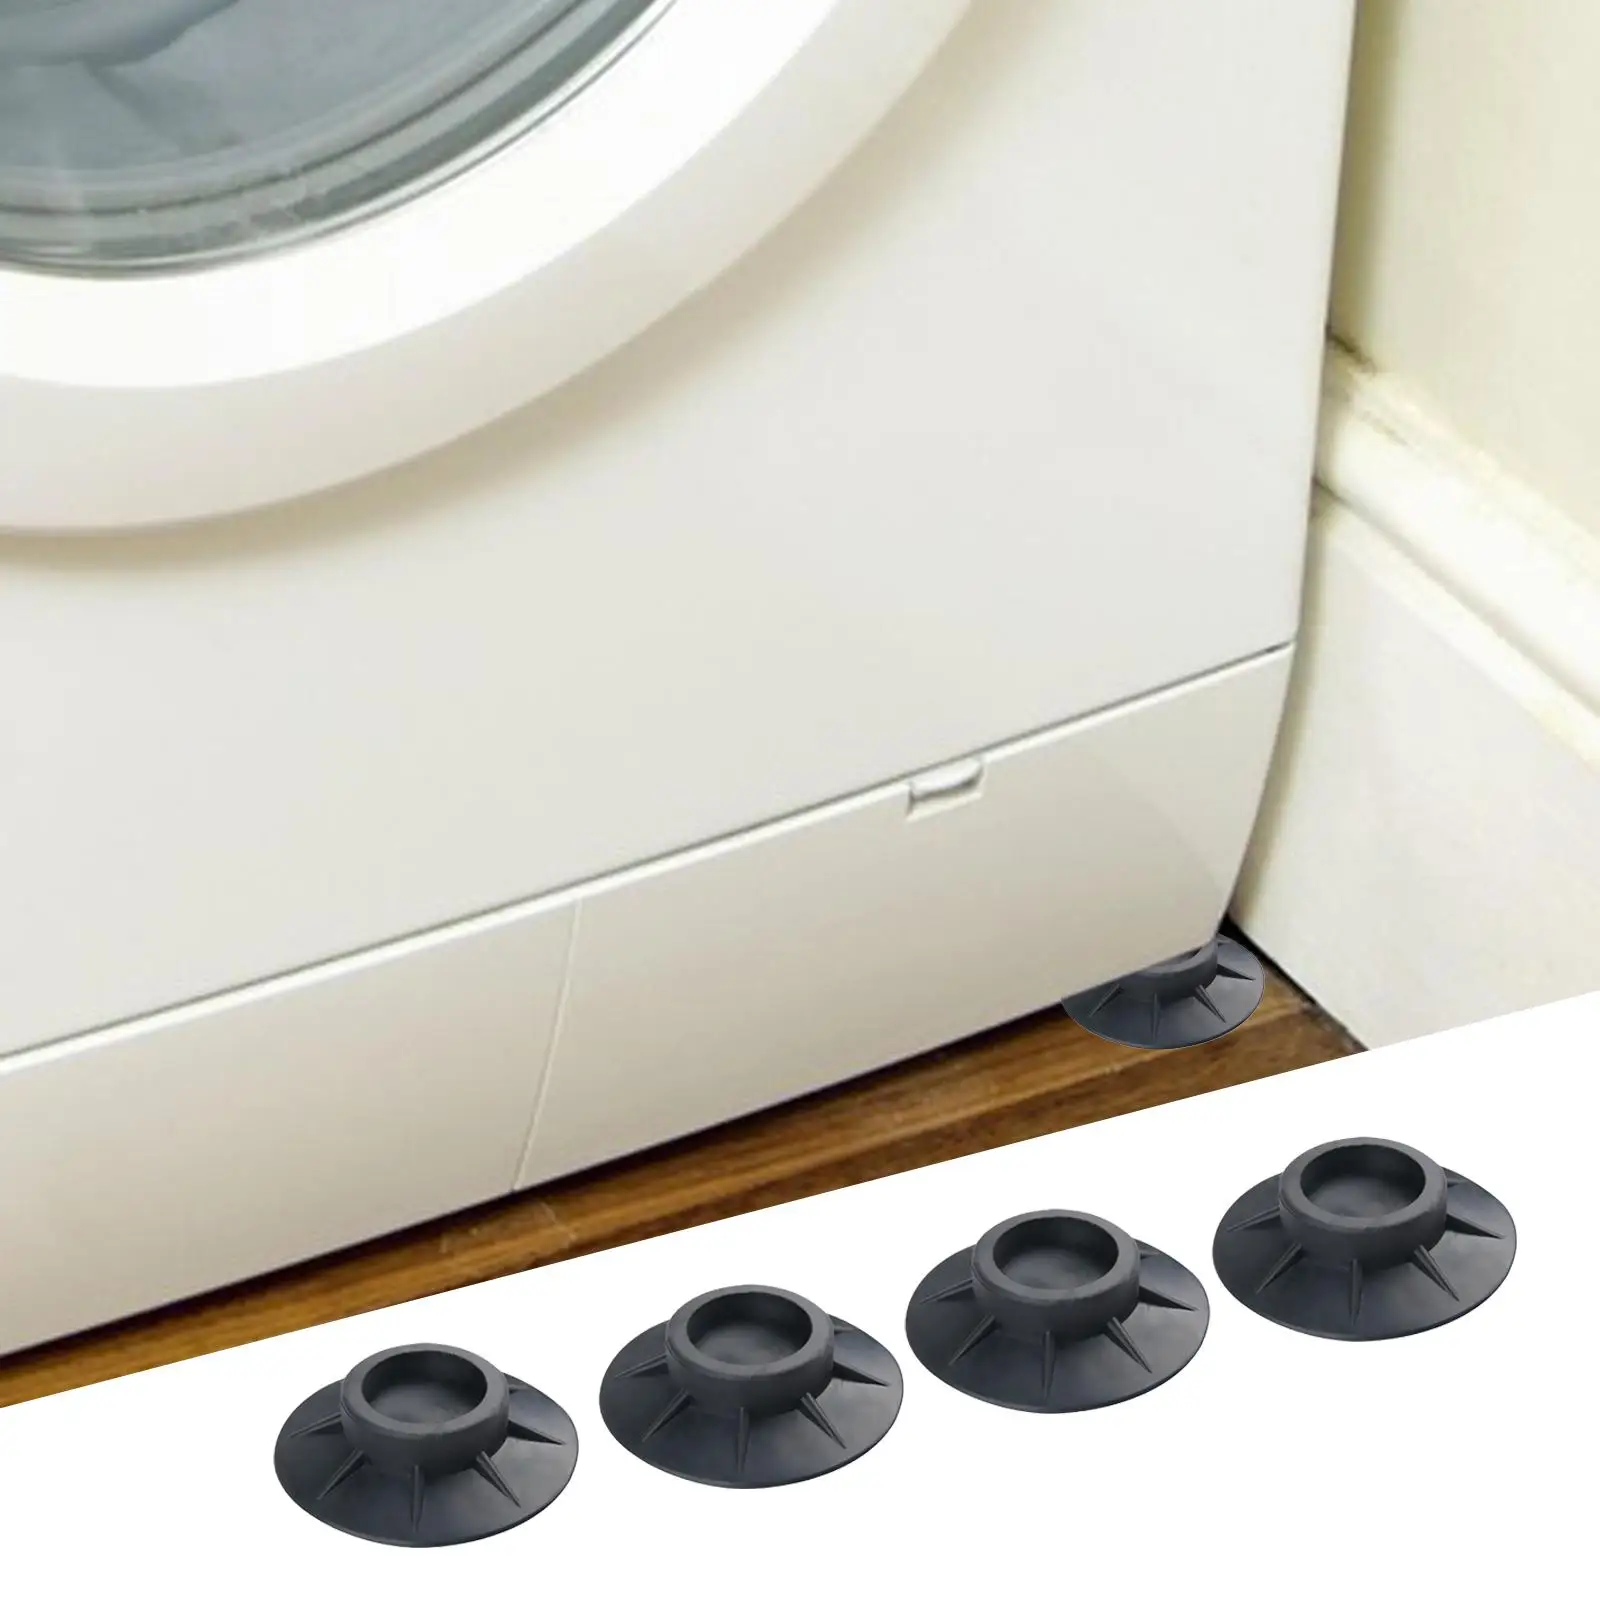 4Pcs Anitivibration Pad Universal Noise Dampening for Dishwashers Fridge